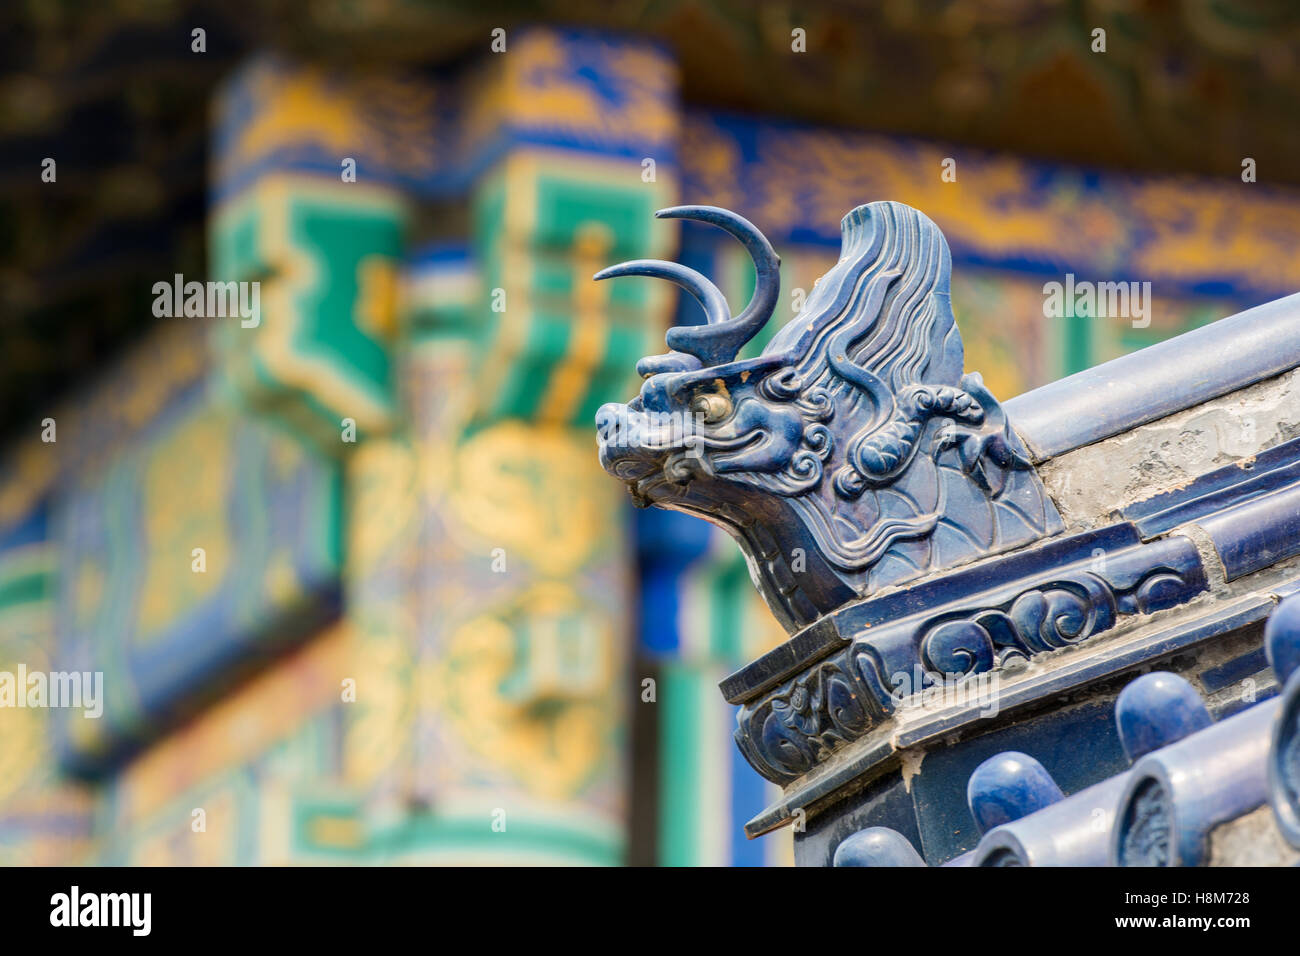 Beijing, China - techo ornamentado del Templo del Cielo, un altar de sacrificio imperial ubicado en el centro de Pekín. Foto de stock